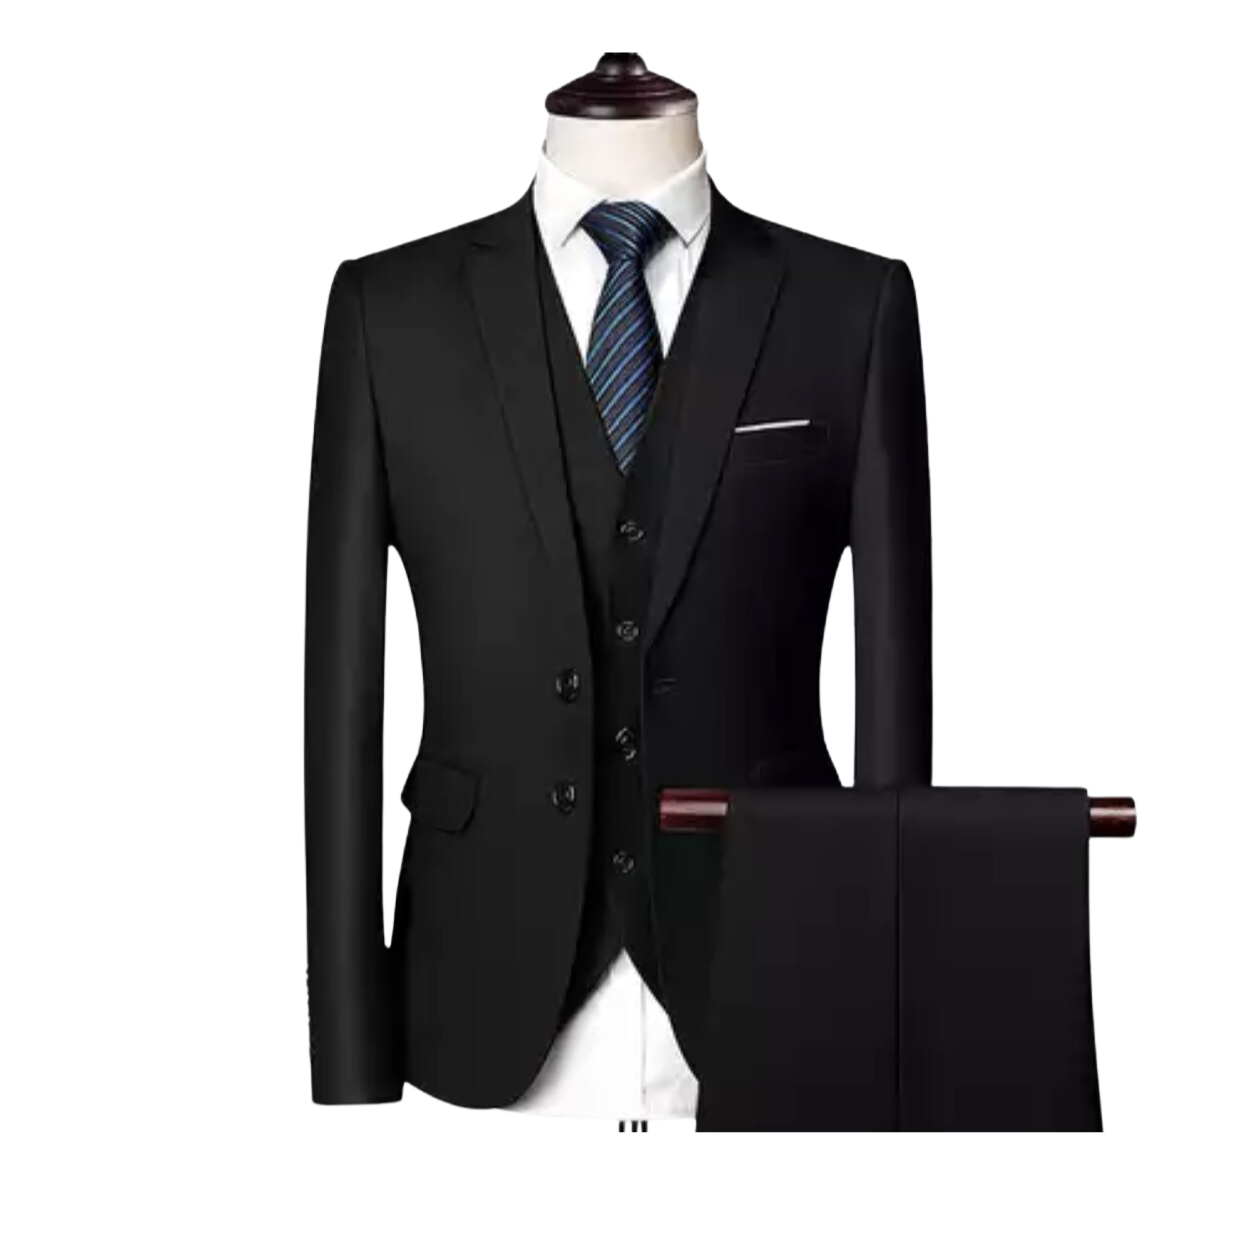 OMC Signature Men's Black Notch Lapel Slim Fit Suit (3-Pieces)